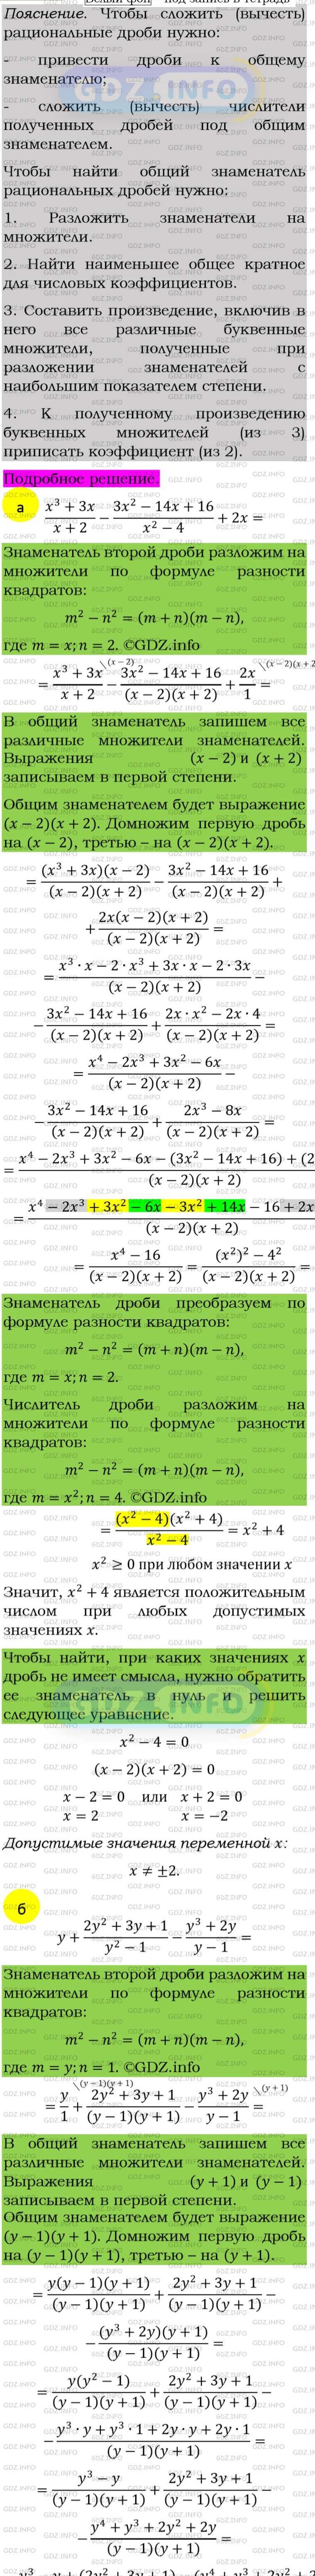 Фото подробного решения: Номер задания №102 из ГДЗ по Алгебре 8 класс: Макарычев Ю.Н.